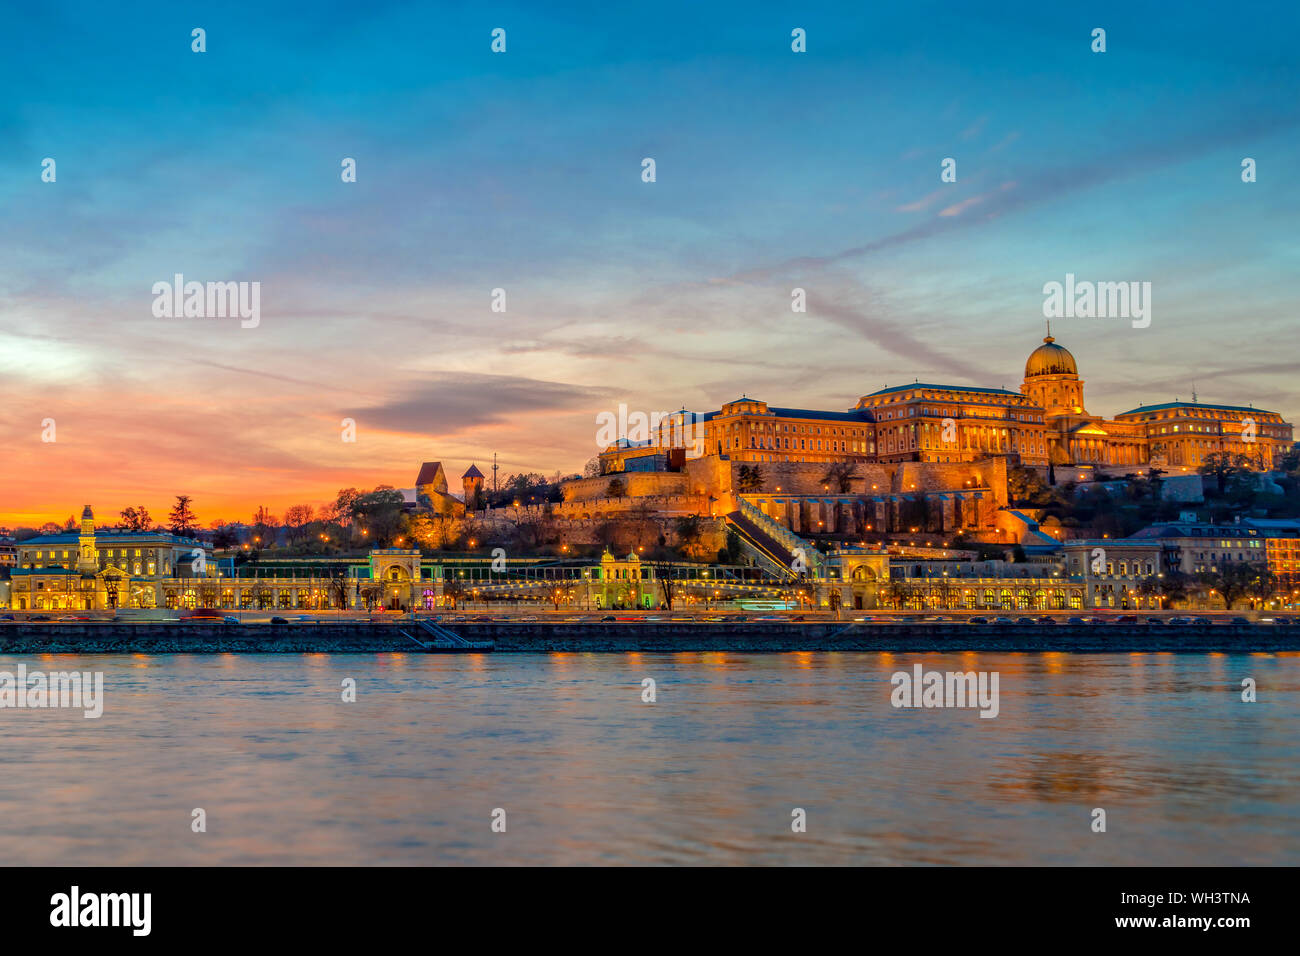 Die Budaer Burg und die Donau in Budapest bei Sonnenuntergang, Ungarn Stockfoto